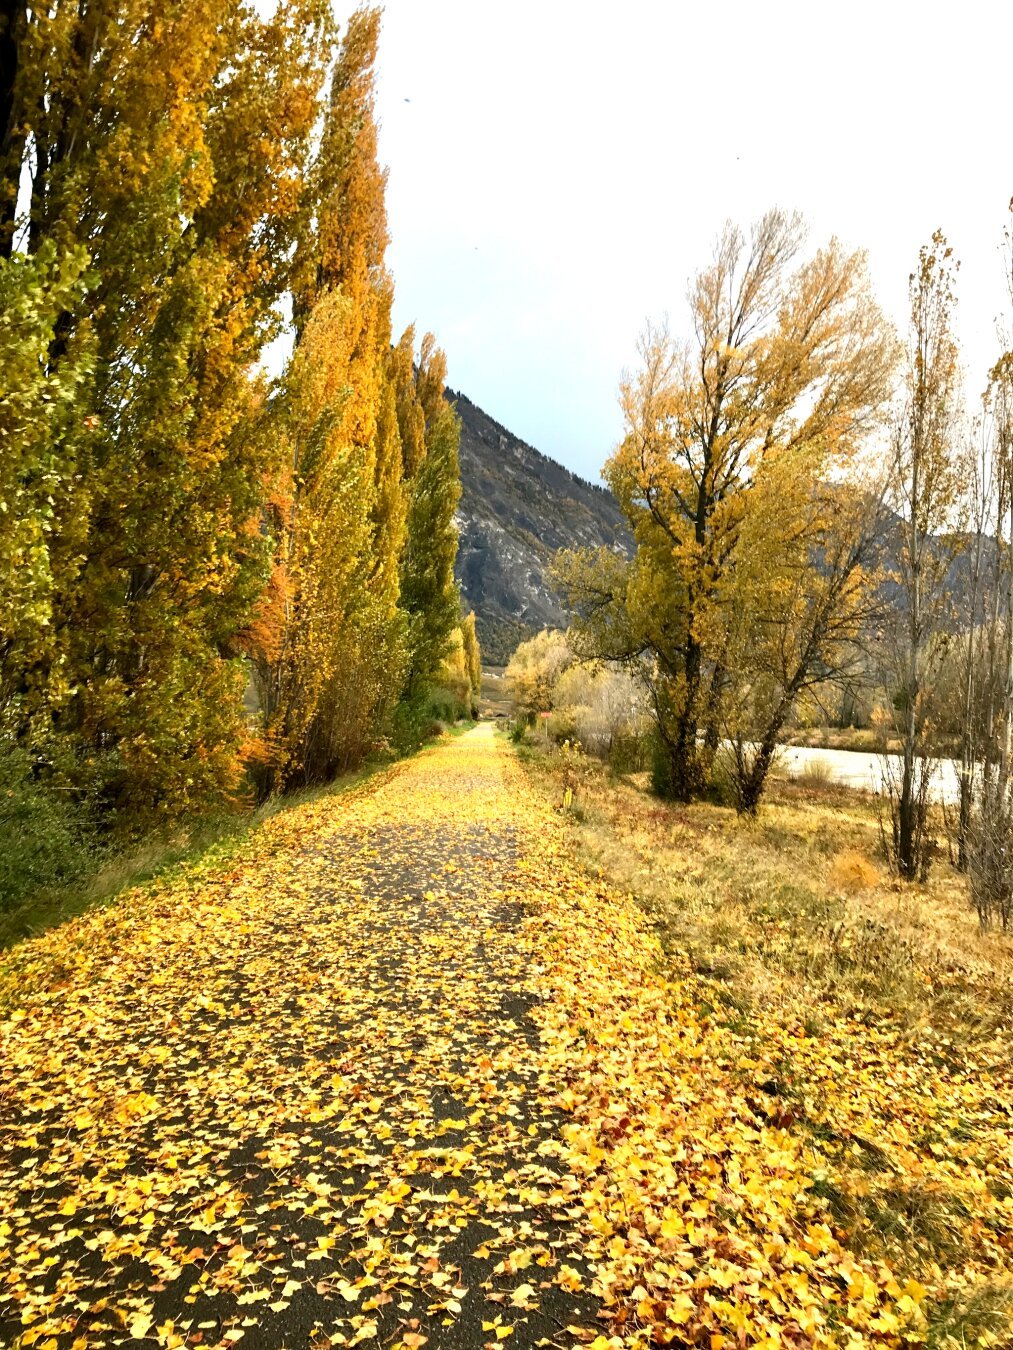 Feuilles mortes jaunes sur une route avec des arbres (peupliers) sur la gauche et une rivière sur la droite.